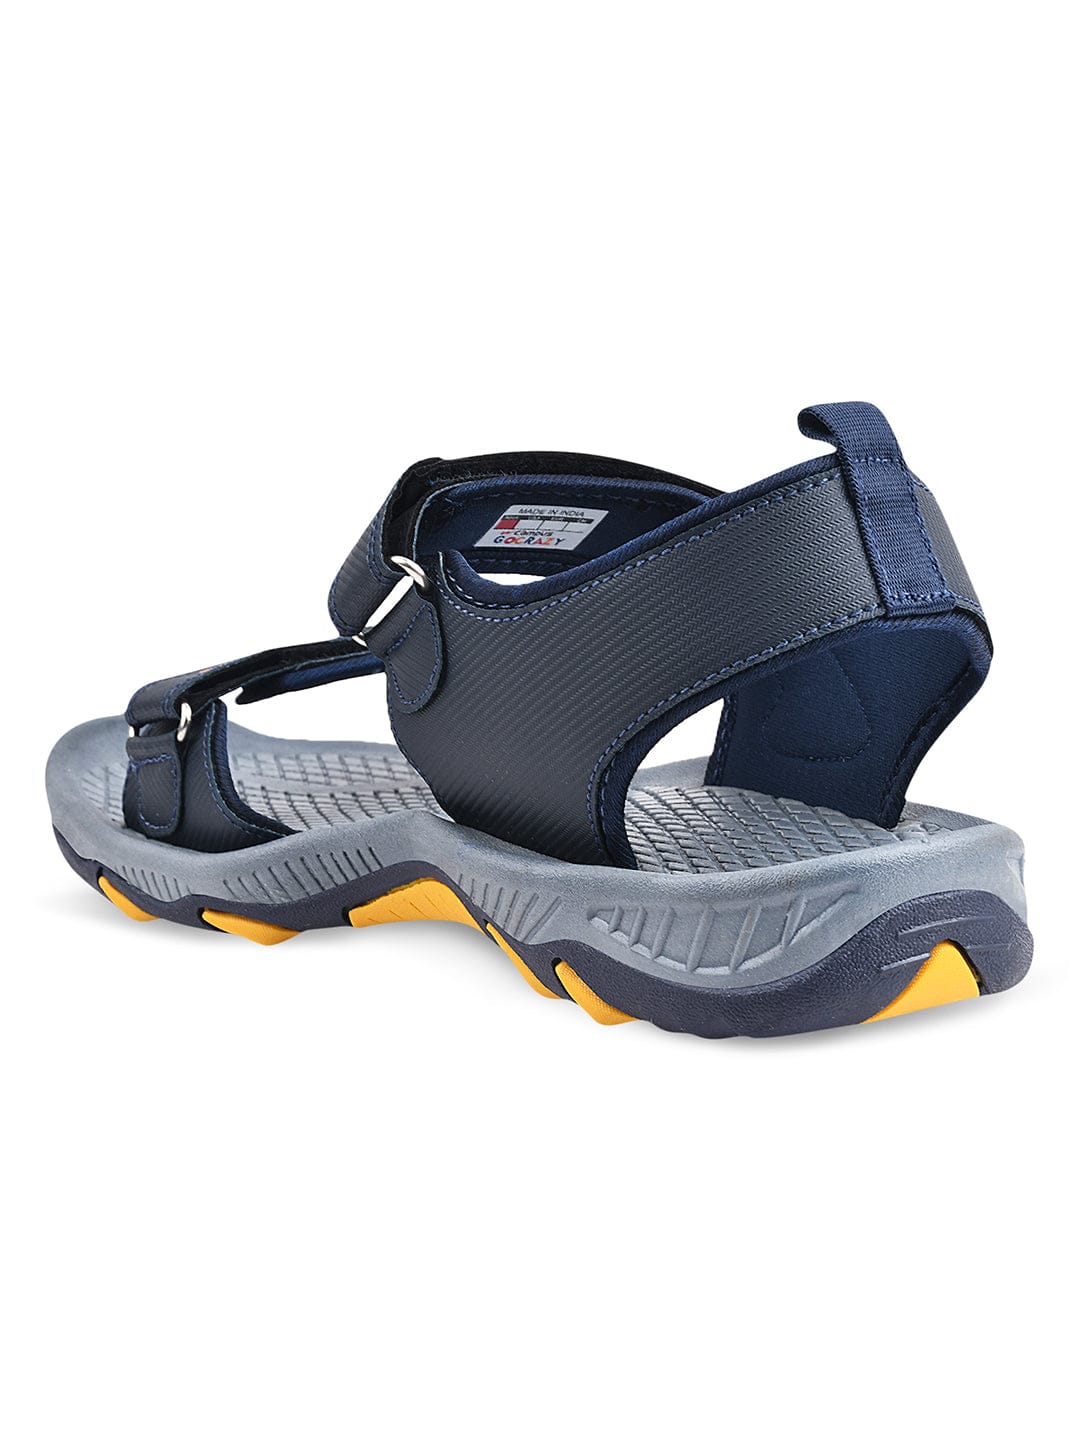 Buy GC-2201 Navy Men's Sandals online | Campus Shoes